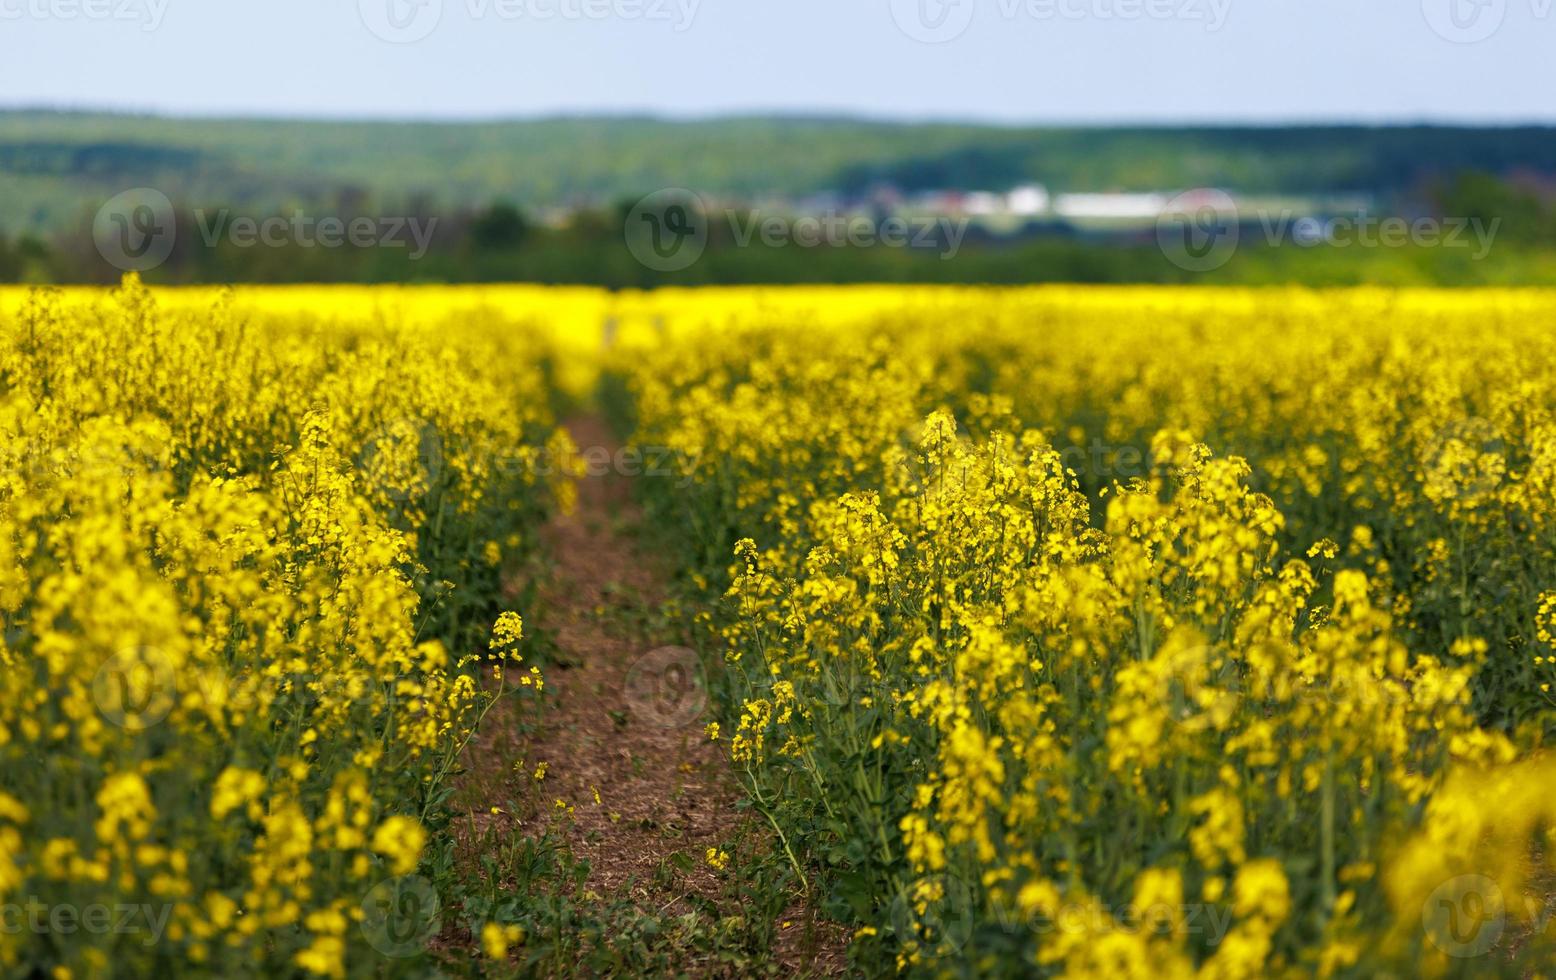 blomning raps fält med traktor mätare, närbild med selektiv fokus foto